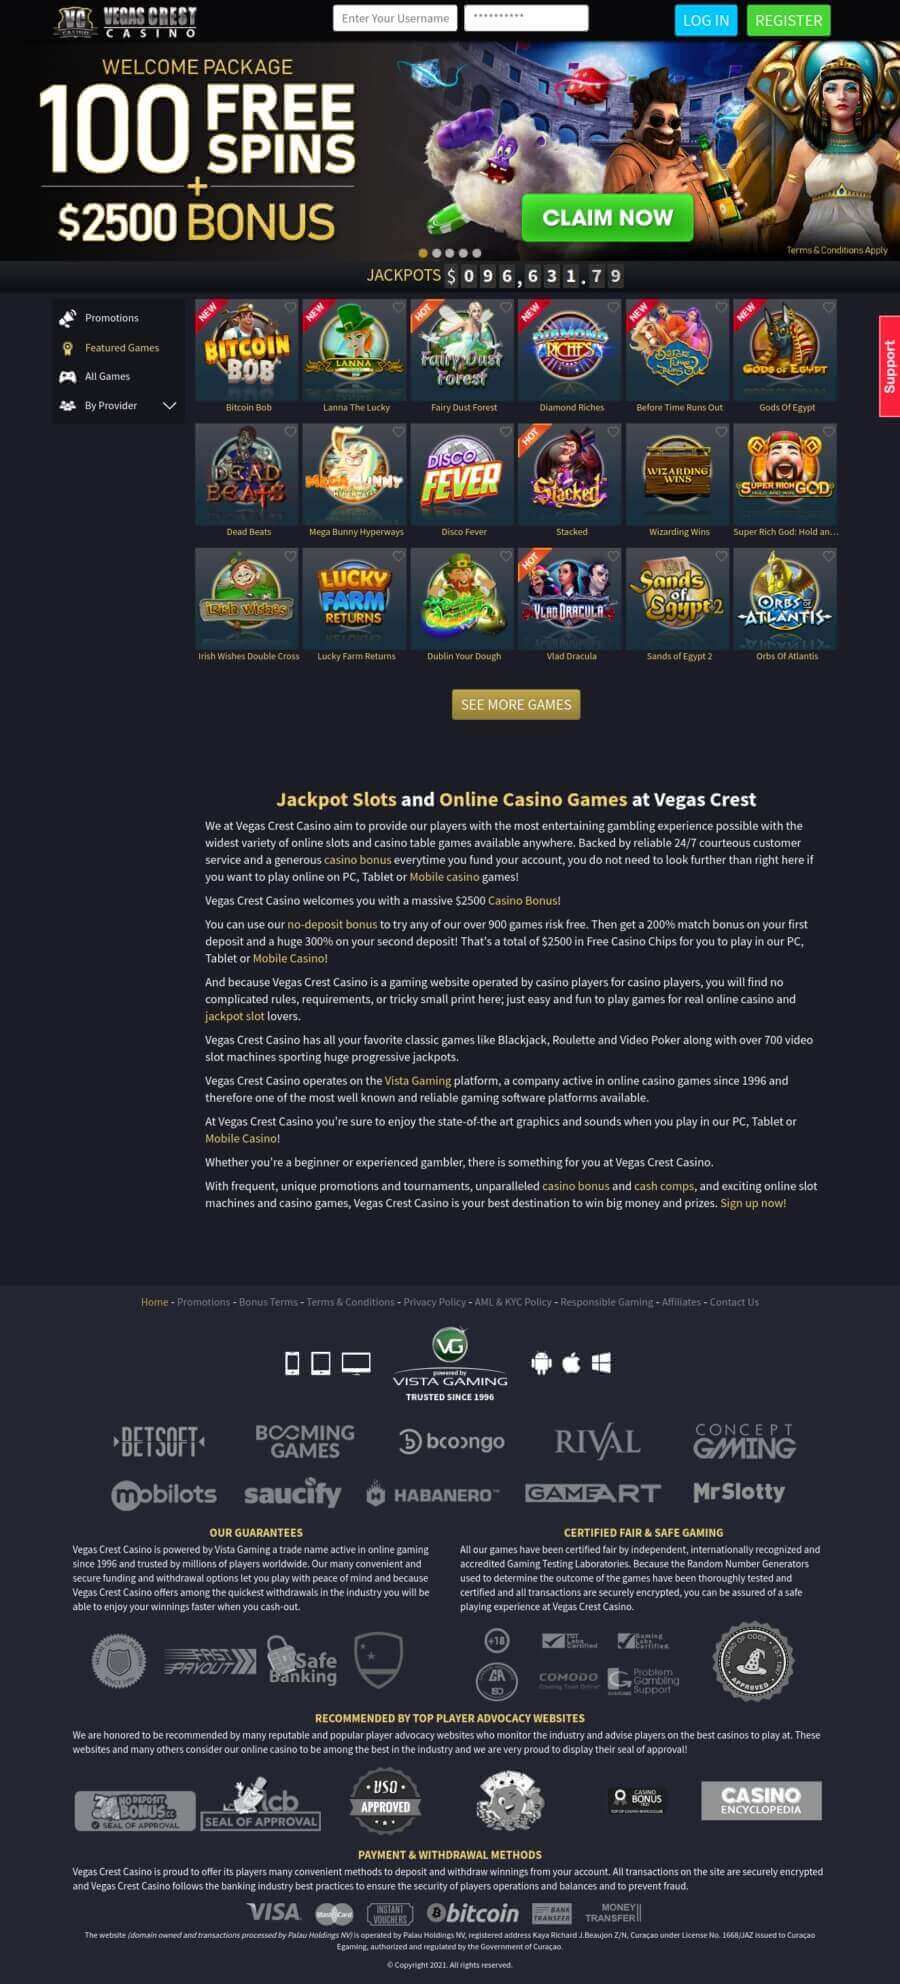 Full review of Vegas Crest online casino